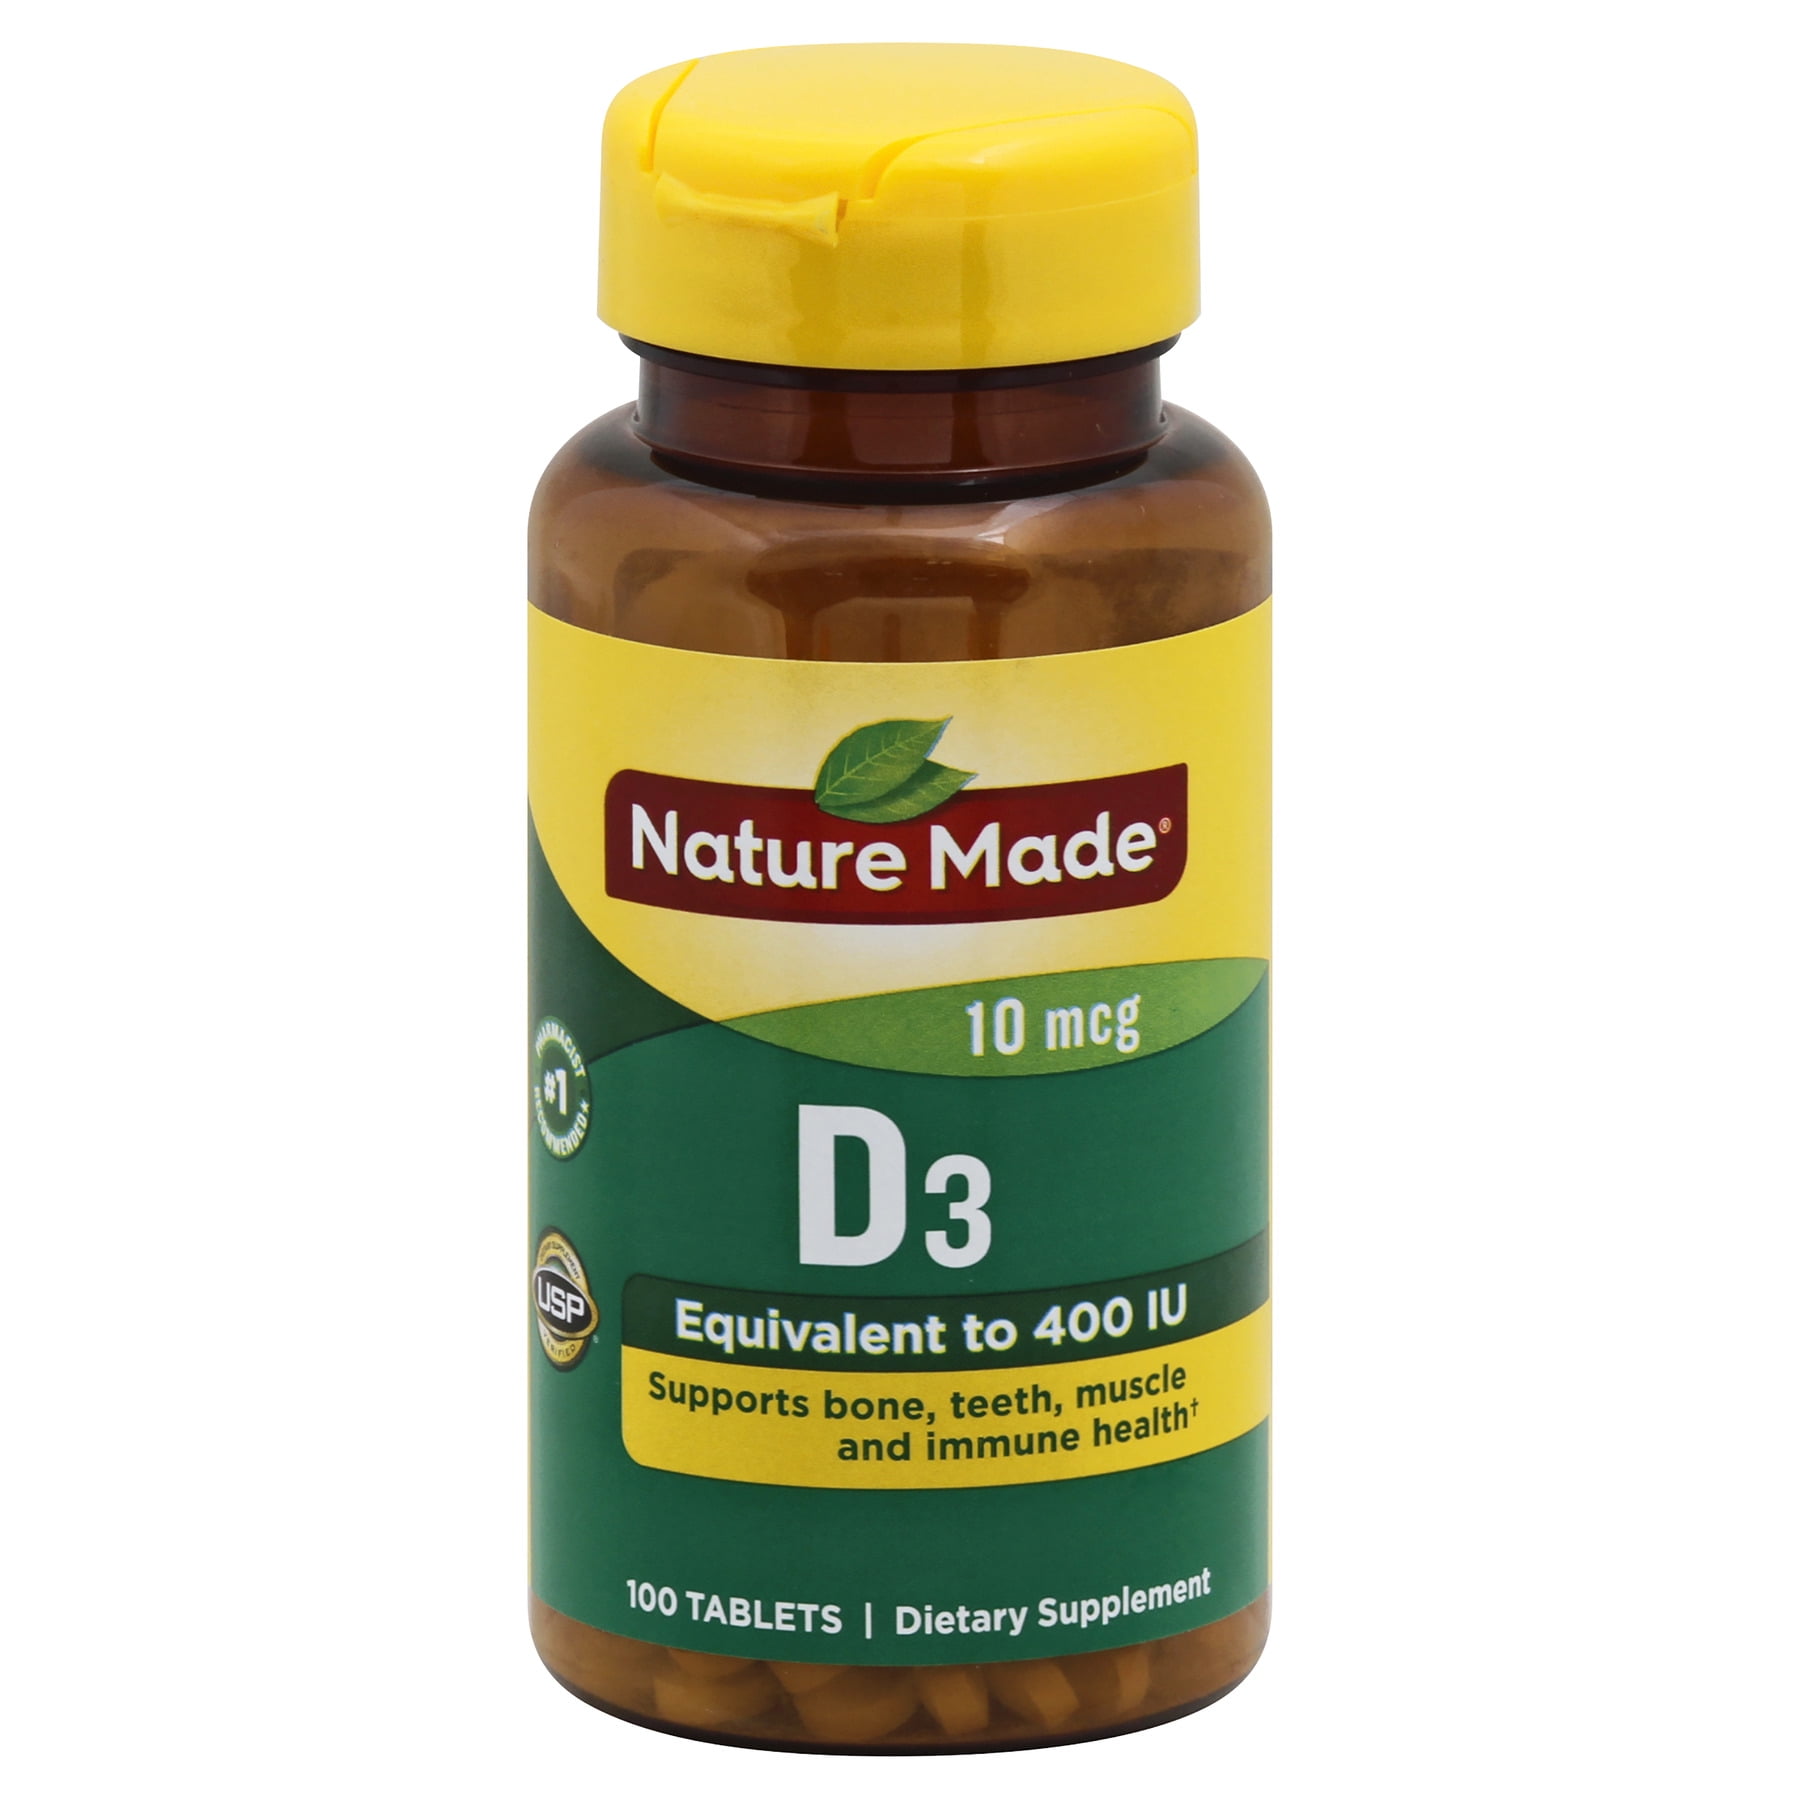 NATURE Vitamin D3, 10 mcg, Tablets, 100.0 CT - Walmart.com